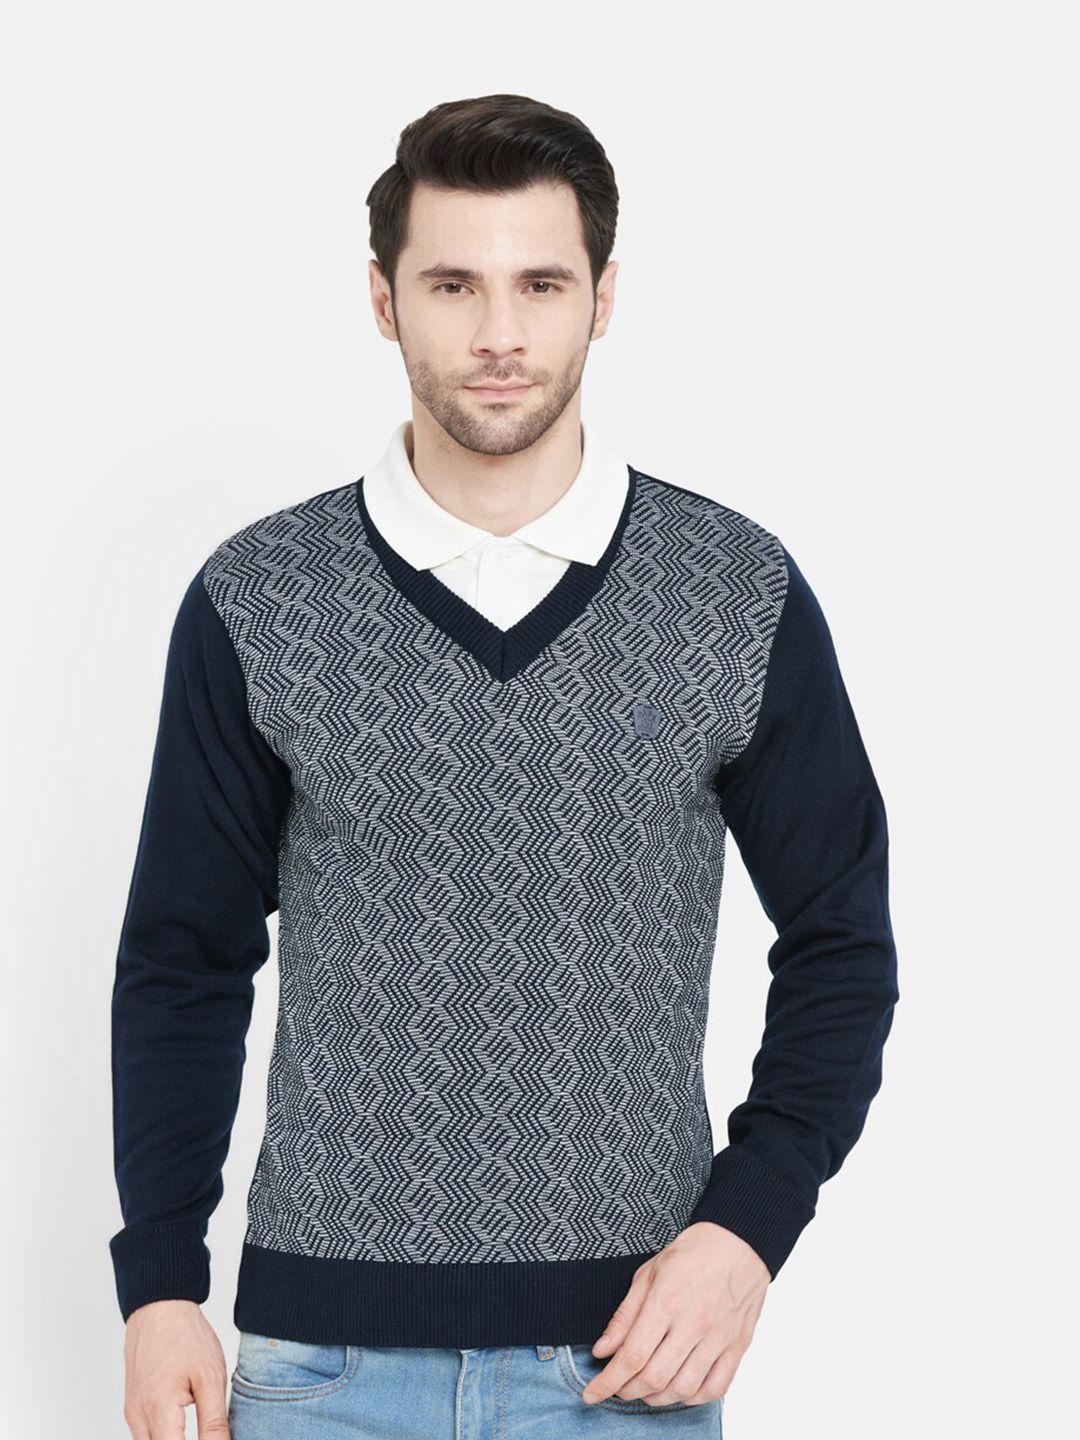 duke-men-navy-blue-self-design-wool-pullover-sweater